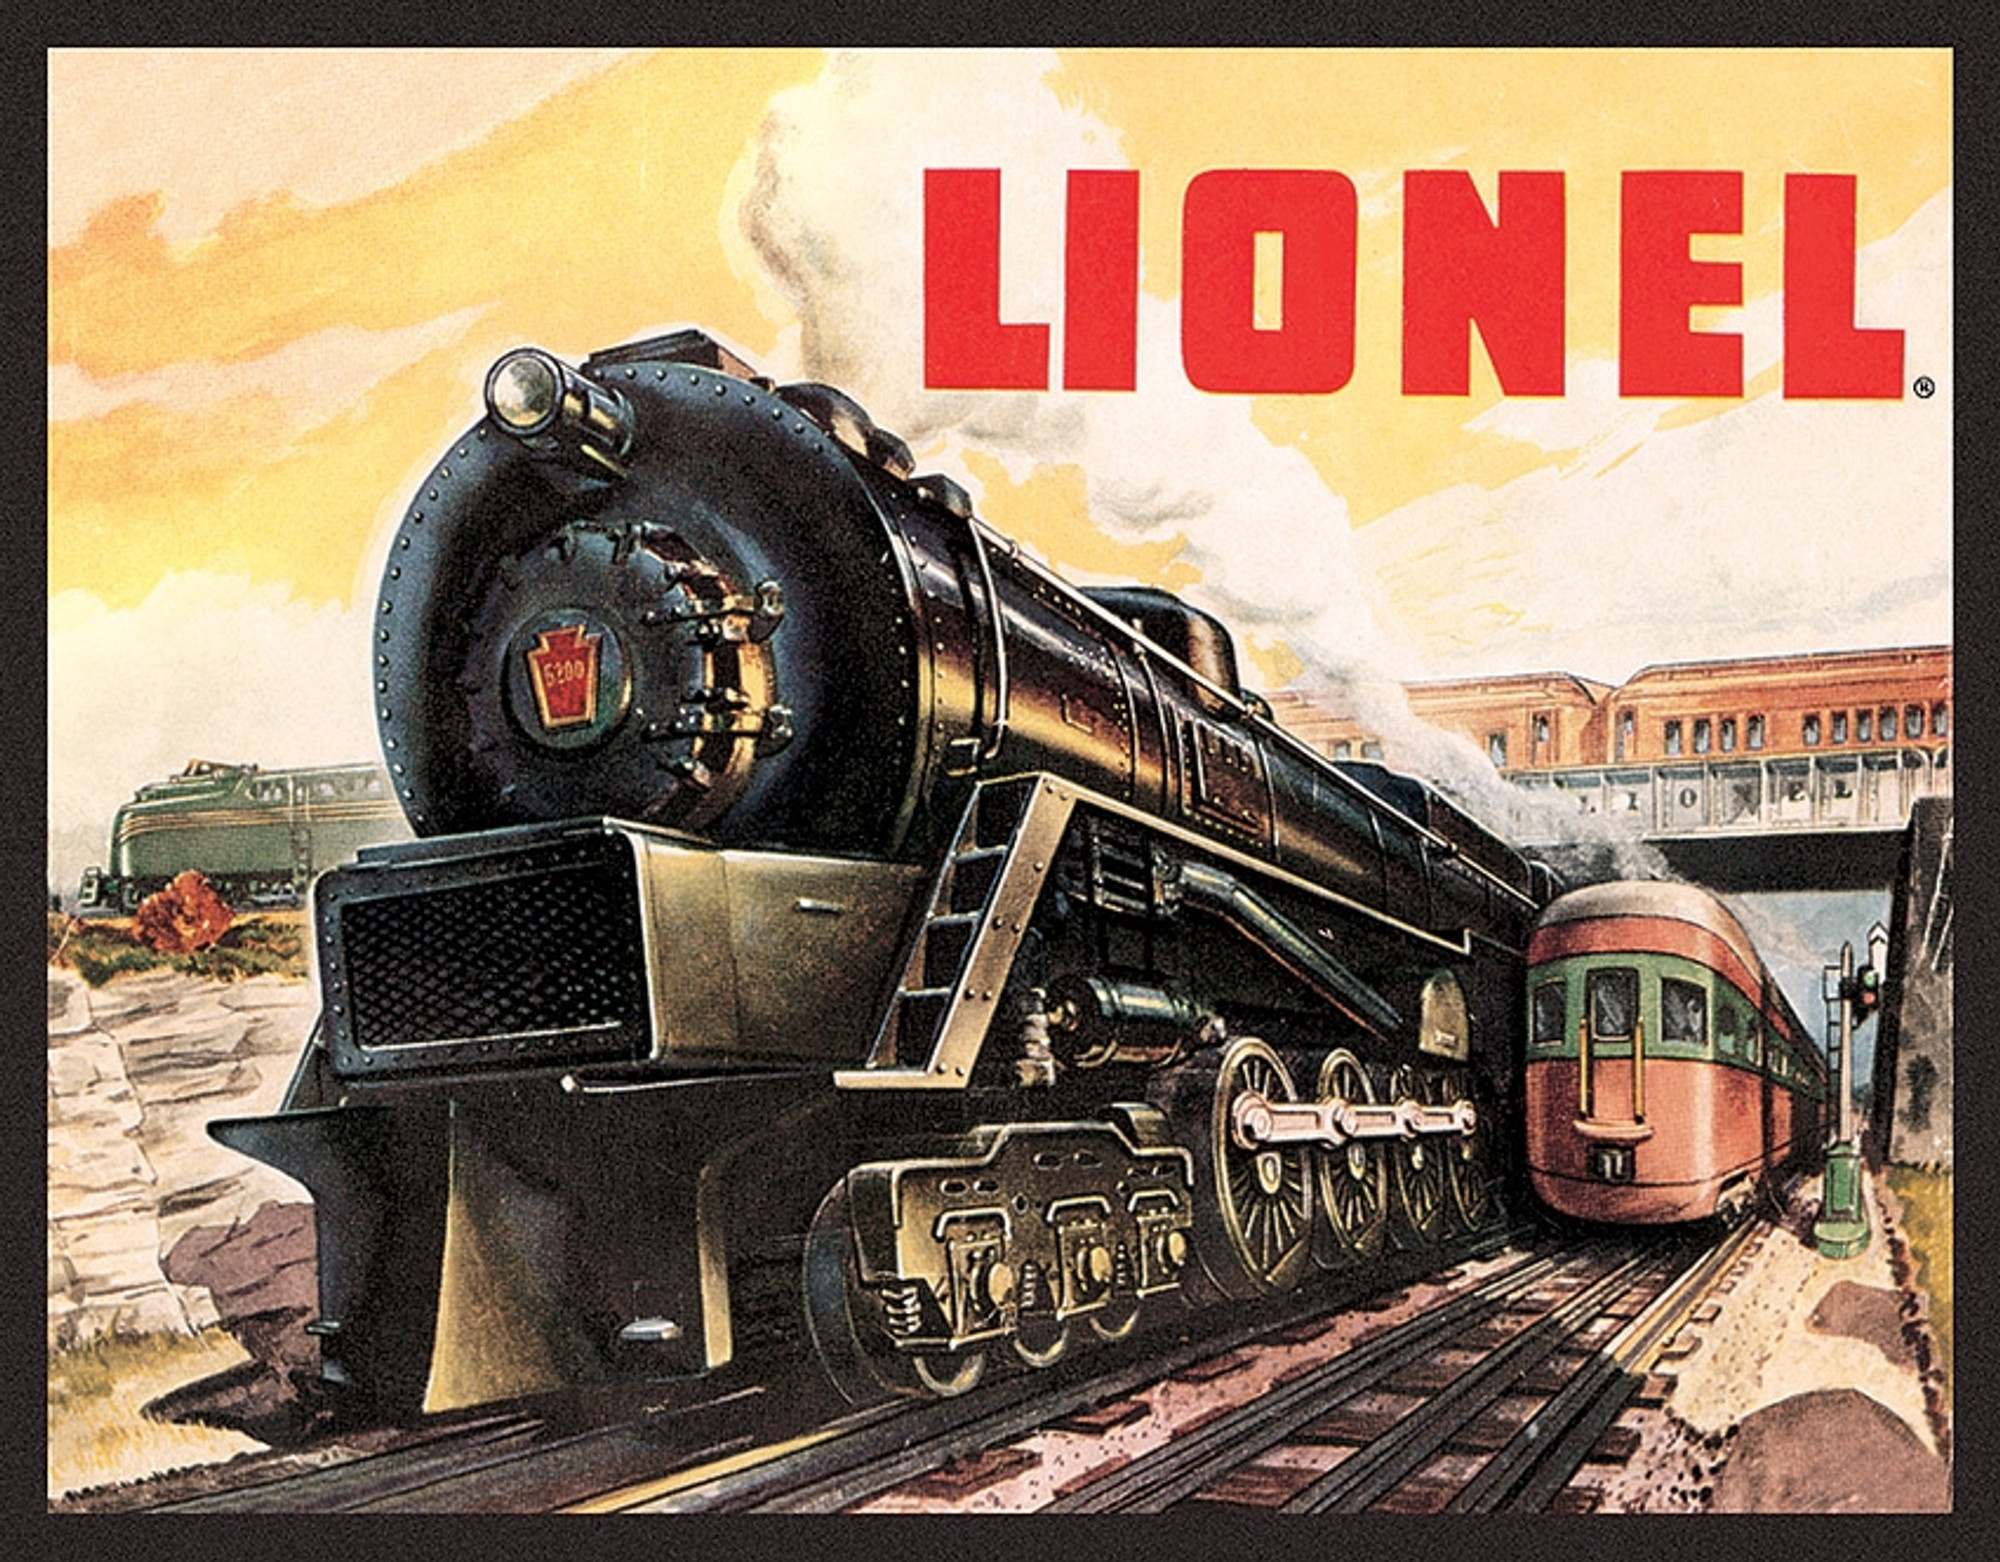 Lionel 5200 Sign